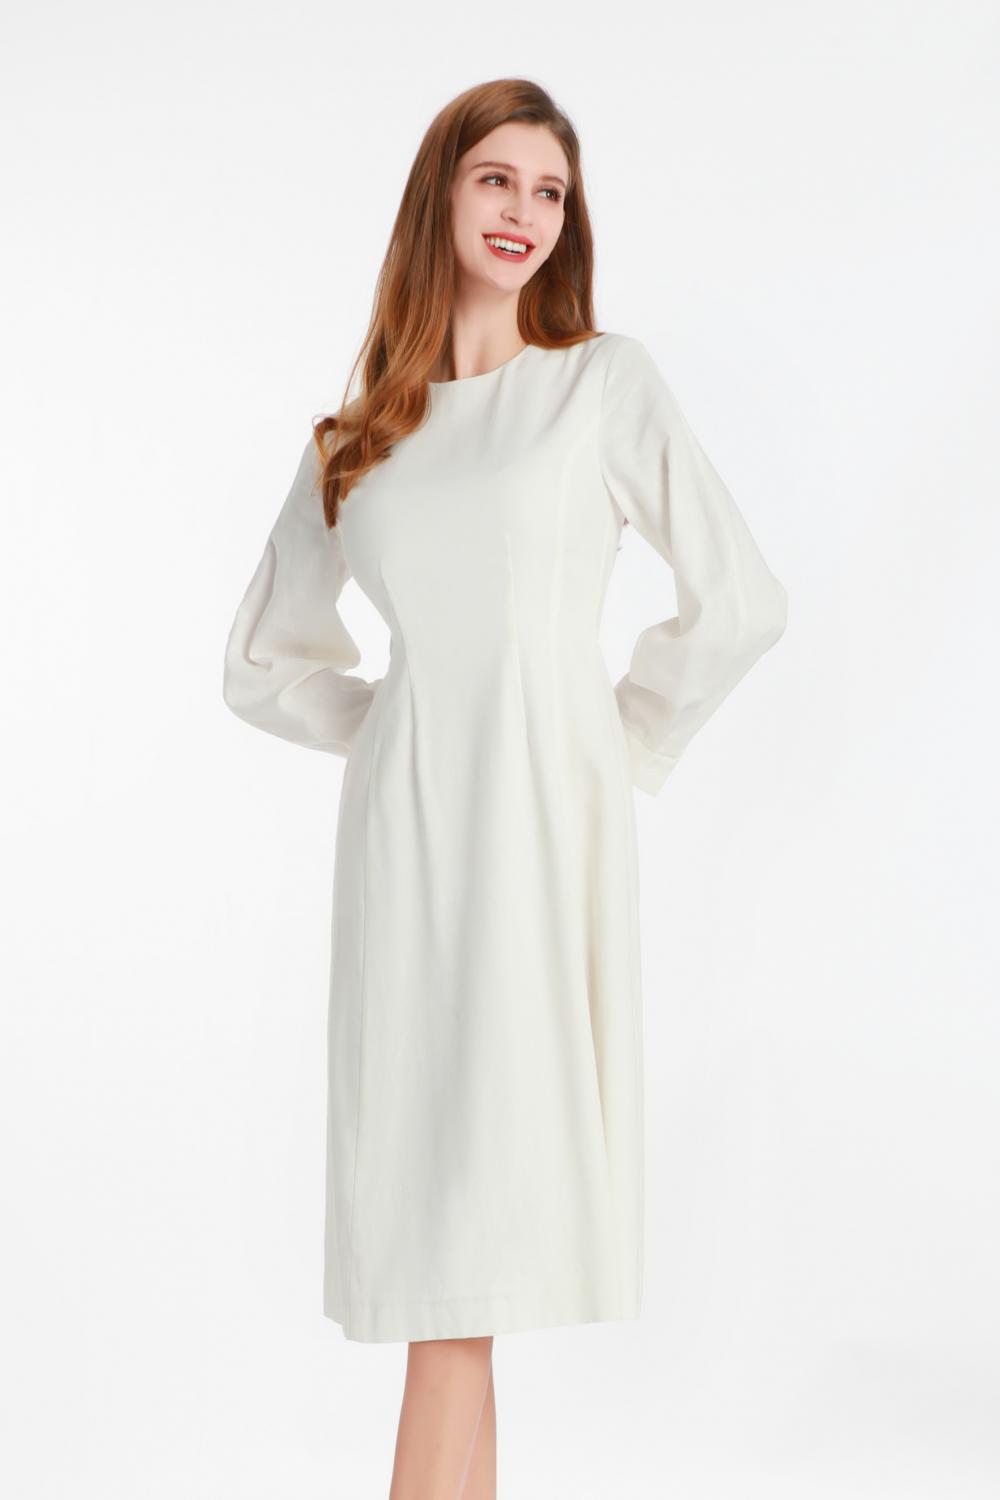 Weißes langärmeliges Kleid mit einem kleinen runden Kragen